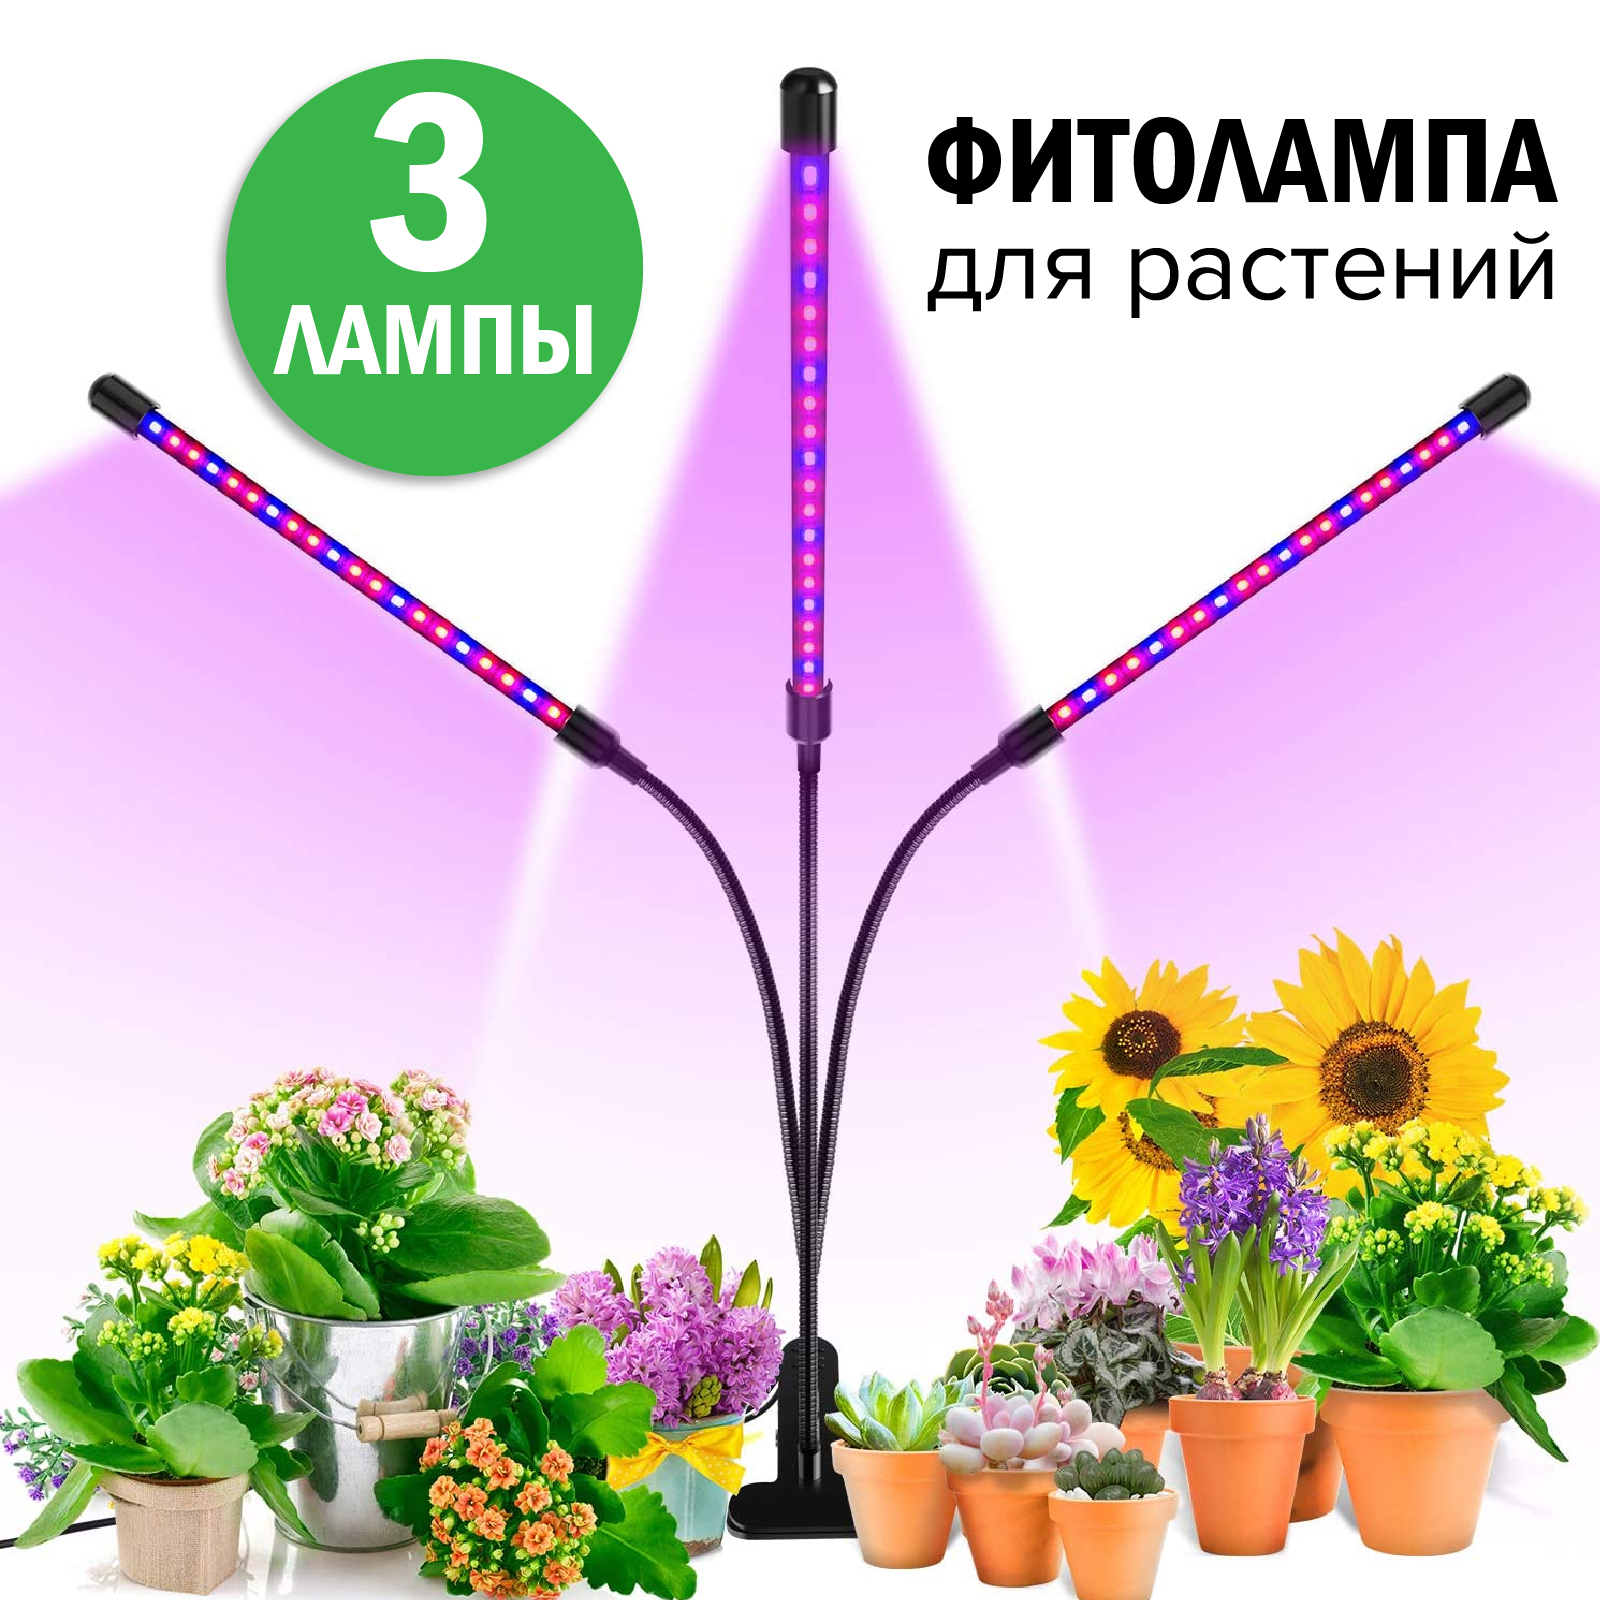 Светильник для рассады. Лампа полный спектр для растений. Светодиодная лампа для растений illumetik полный спектр. Фито лампы с полным спектром света для роста растений купить. Таймер для рассады